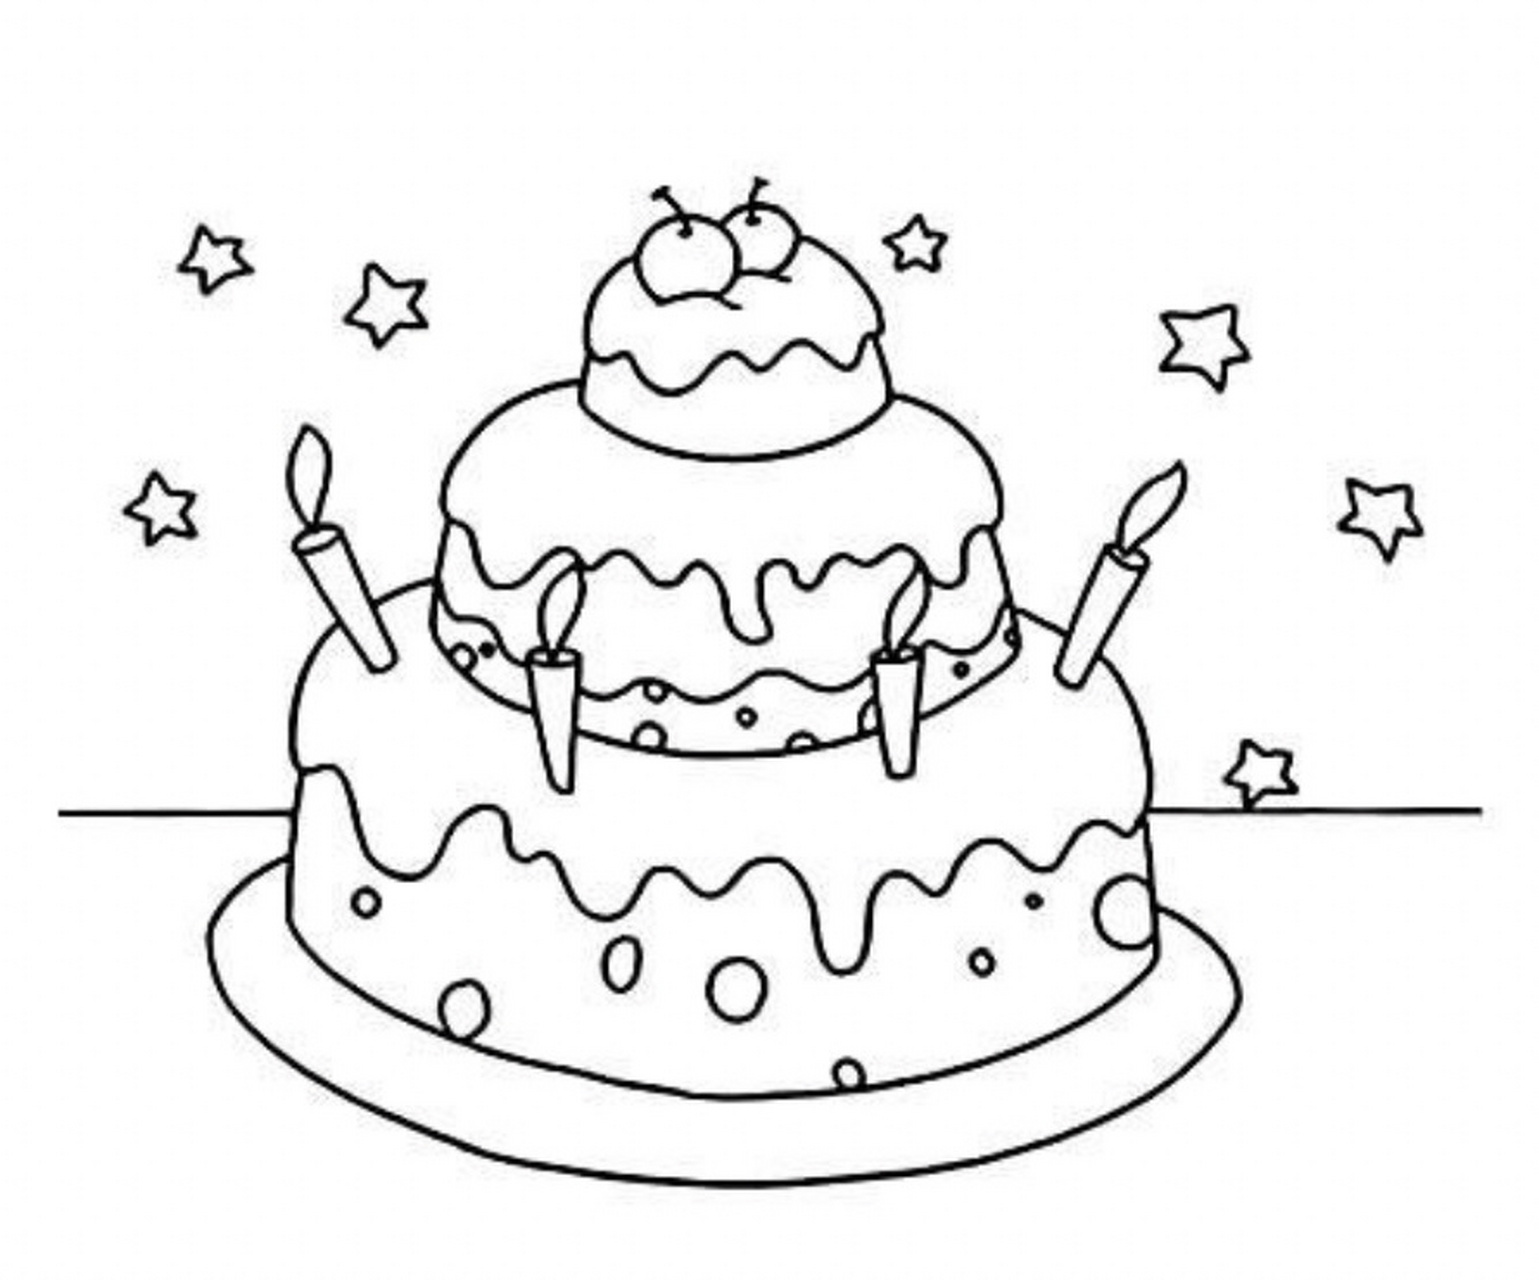 创意儿童画/少儿创意美术/儿童画蛋糕简笔画 生日蛋糕 绘画过程中发挥